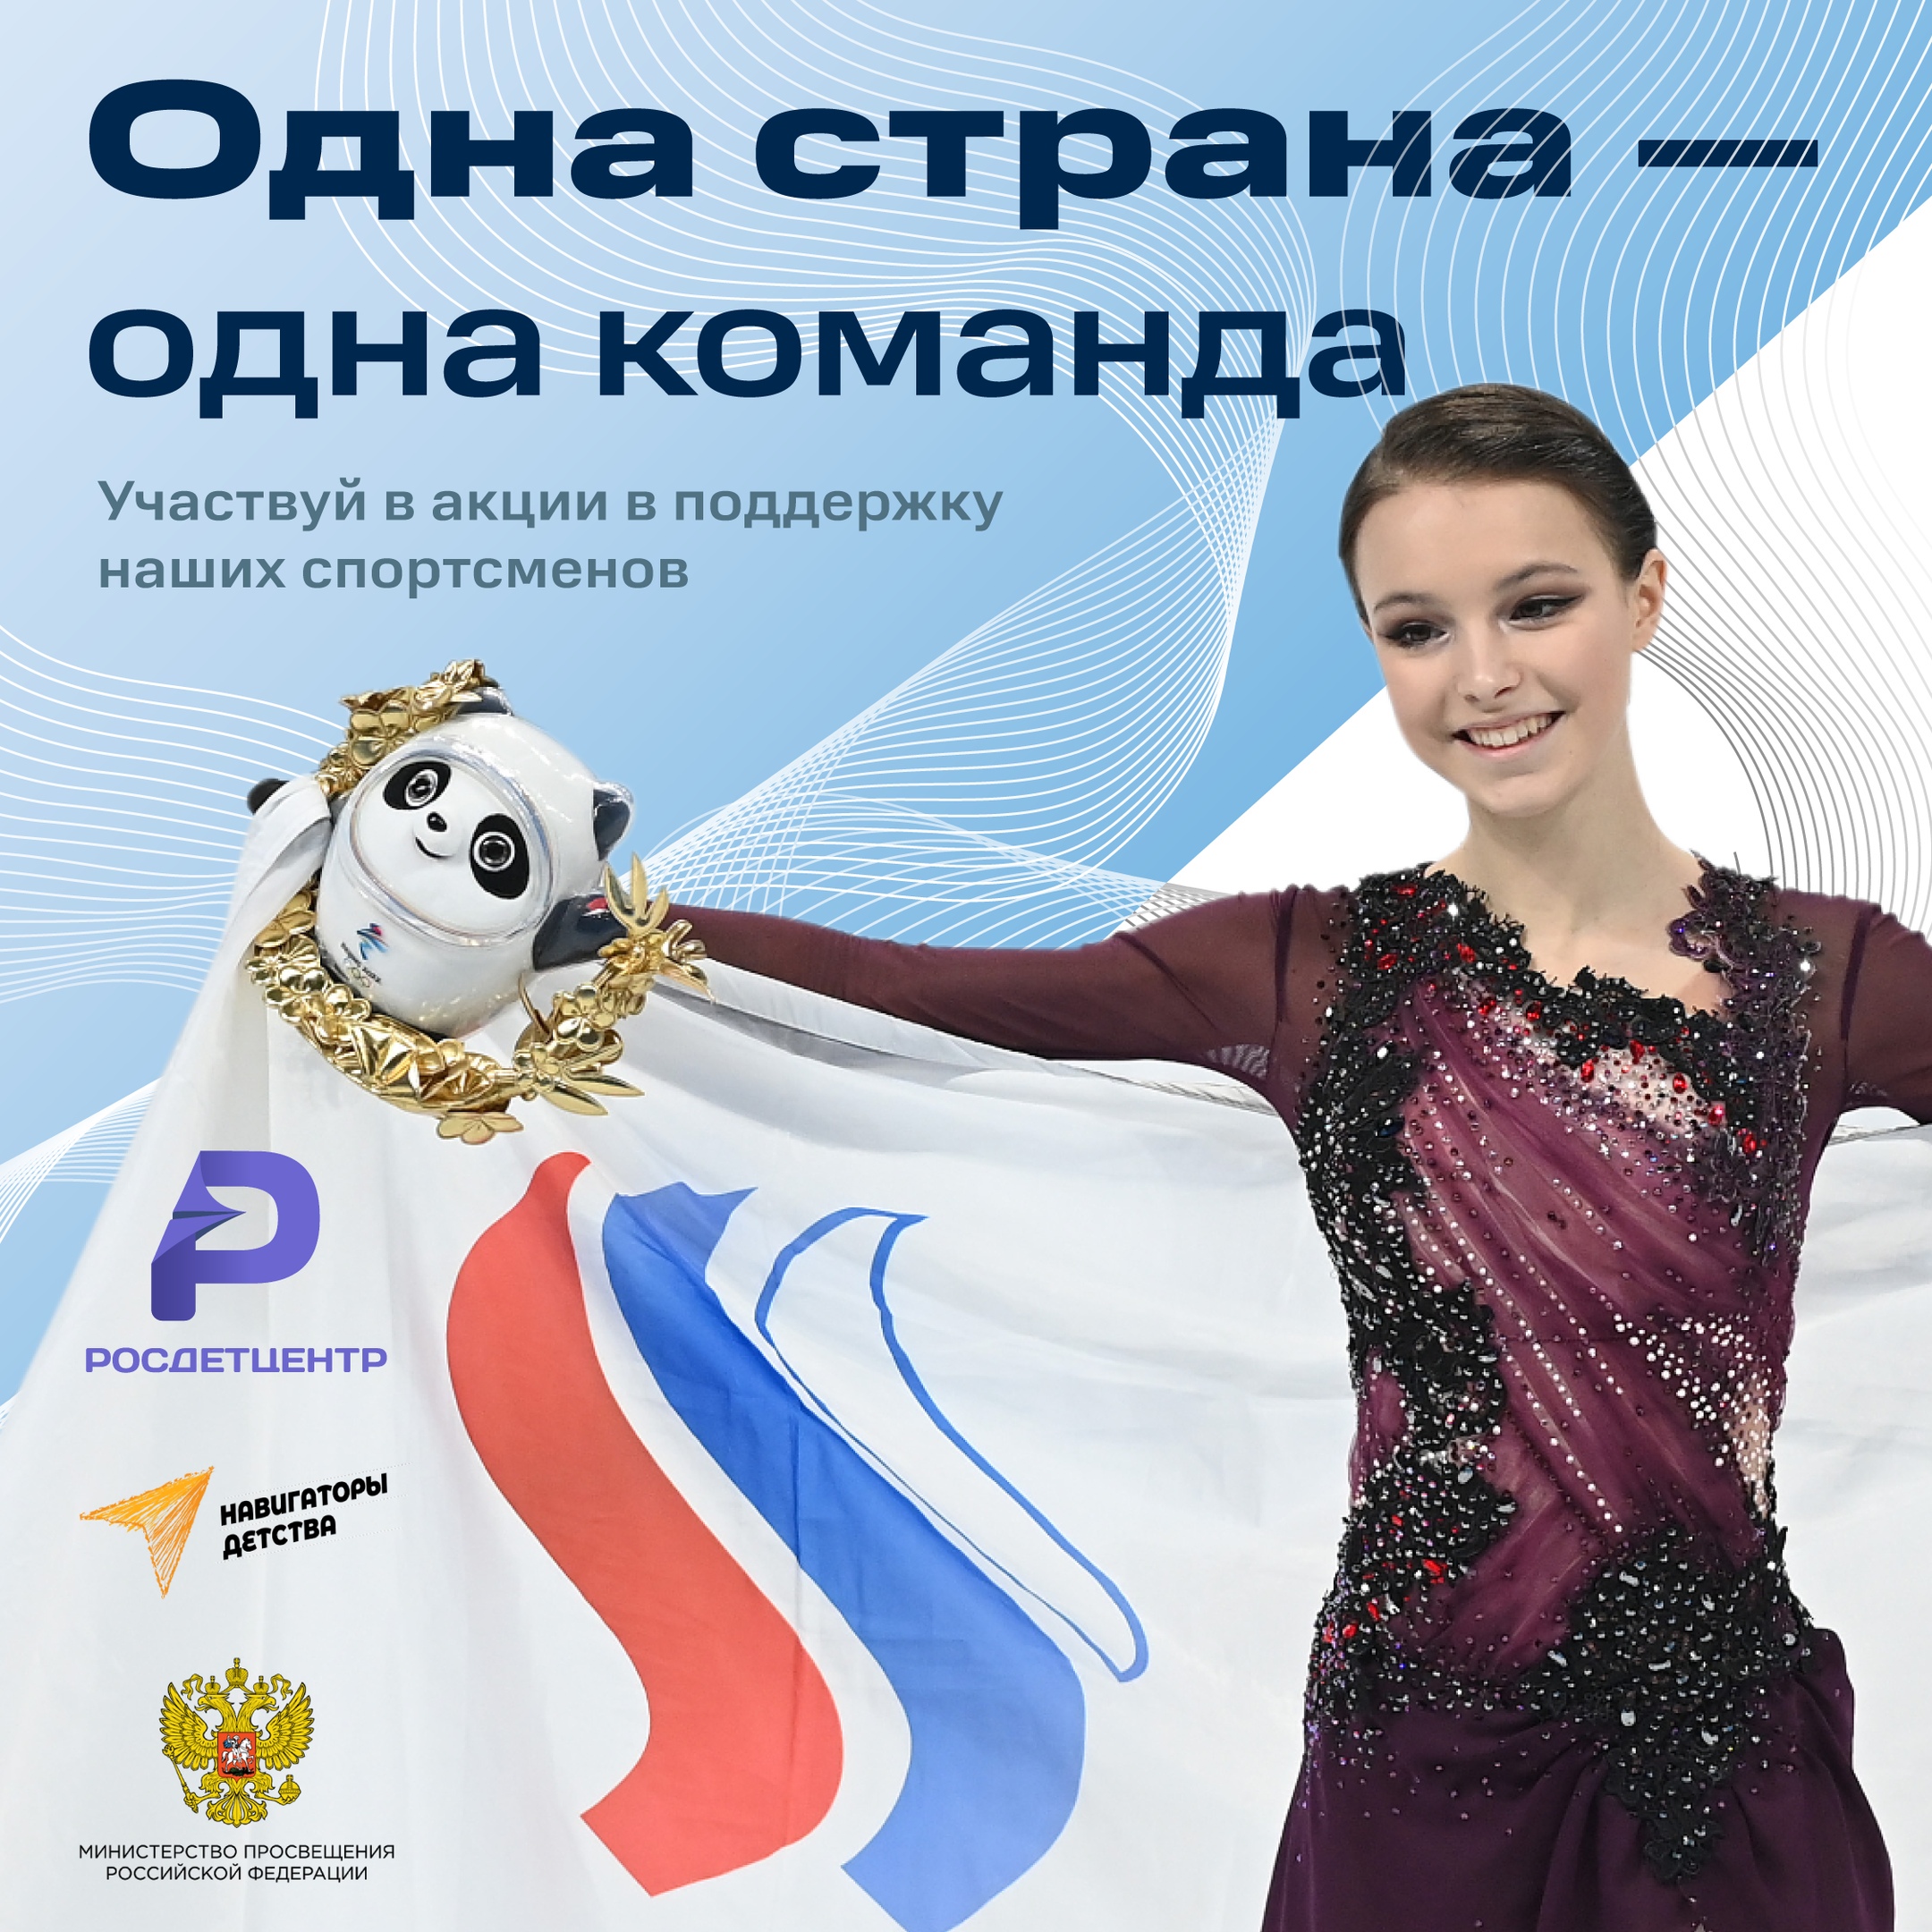 Поддержка российских спортсменов очень важна, особенно в условиях несправедливости на международных соревнованиях.